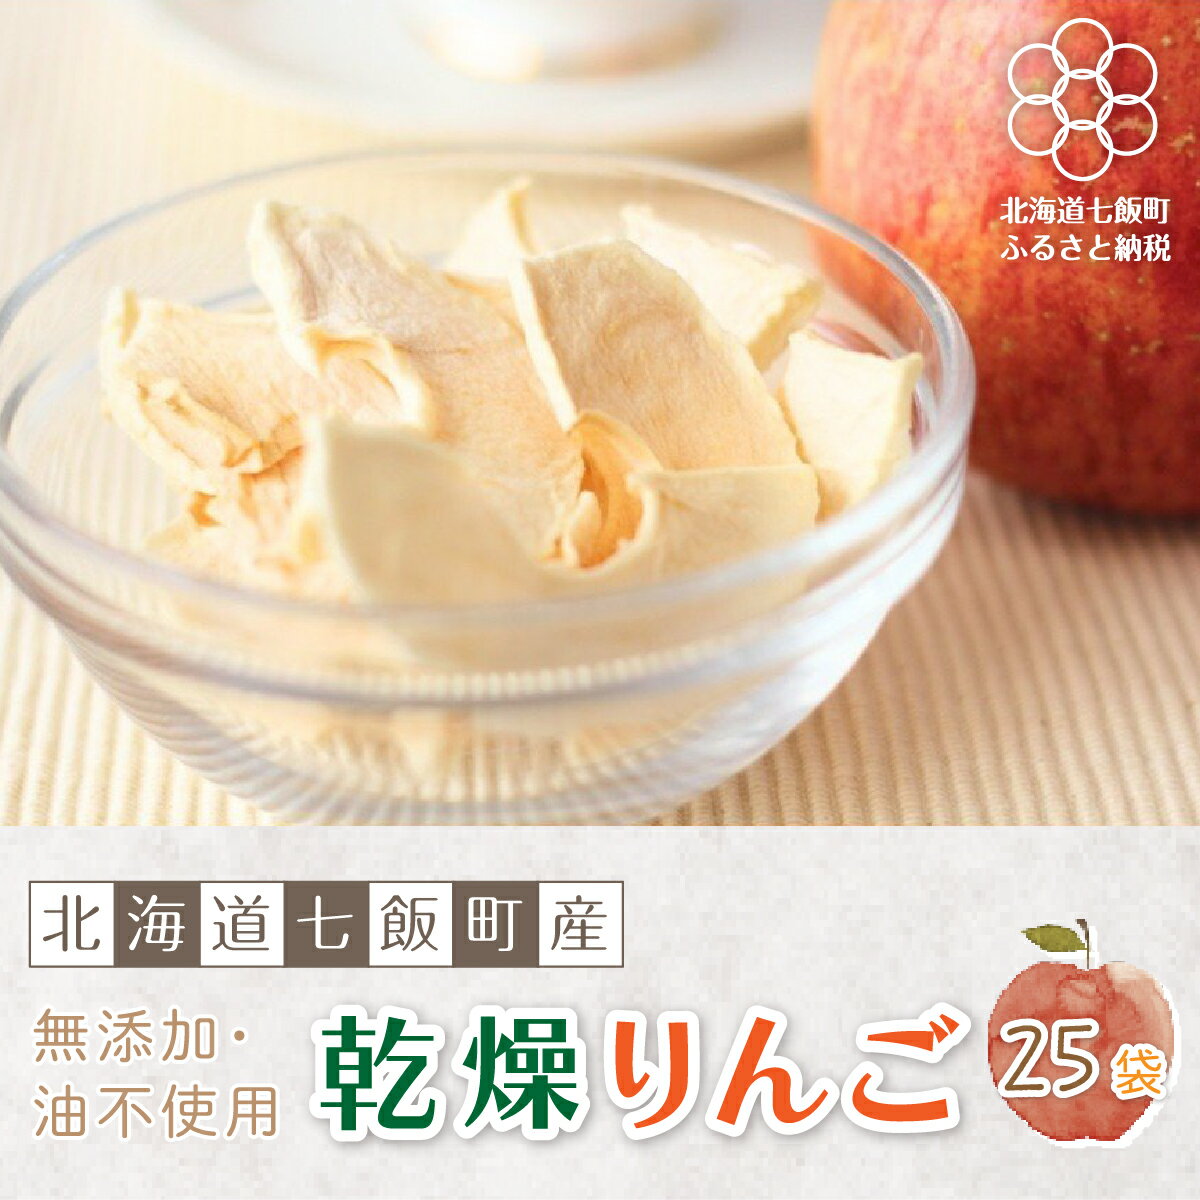 無添加 りんごチップス 25袋パック （乾燥りんご） 【北海道産りんごそのまんま】 北海道七飯町 りんご リンゴ アップル チップス 乾燥りんご 素材の味 無添加 健康 美容 スイーツ おやつ NAI001